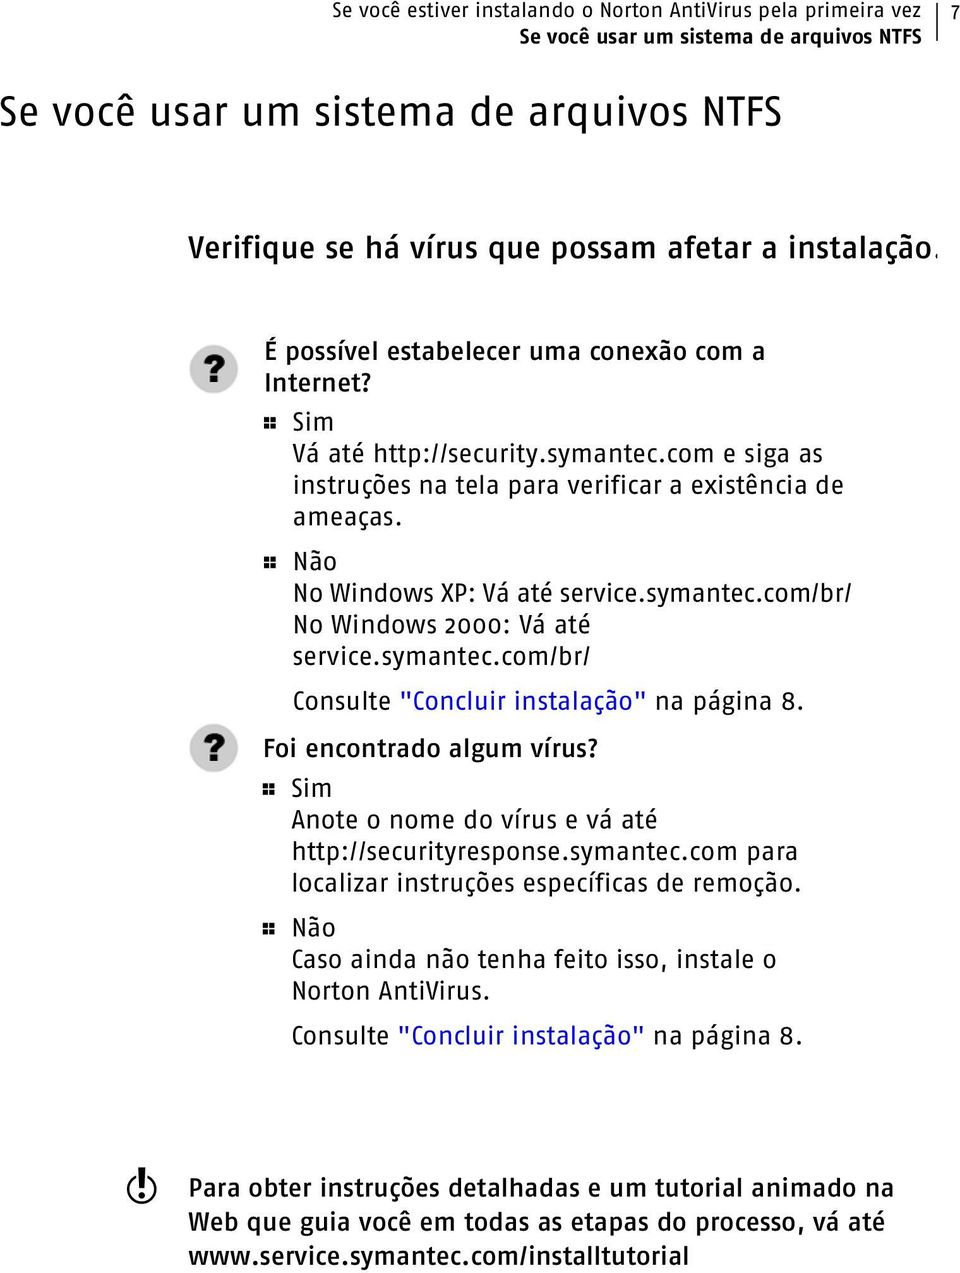 1 Não No Windows XP: Vá até service.symantec.com/br/ No Windows 2000: Vá até service.symantec.com/br/ Consulte "Concluir instalação" na página 8. Foi encontrado algum vírus?